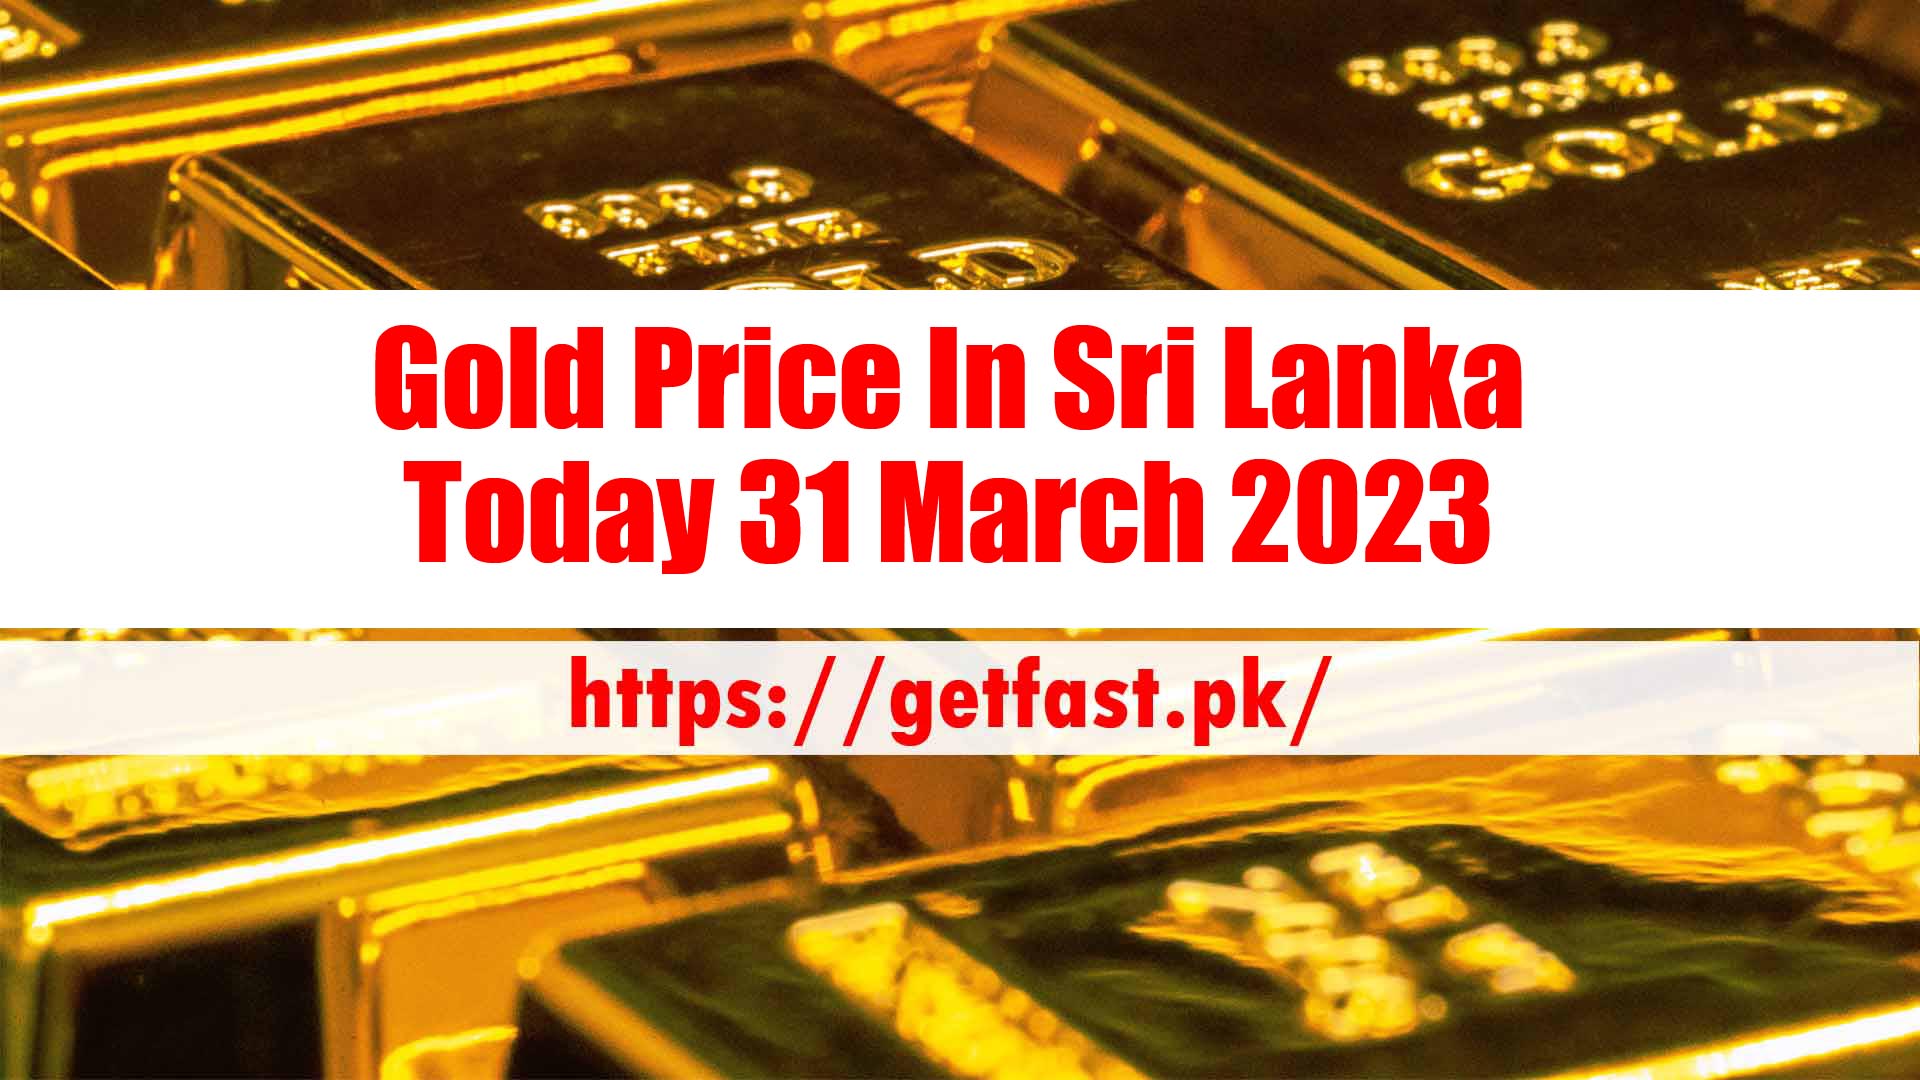 Gold Price In Sri Lanka Today